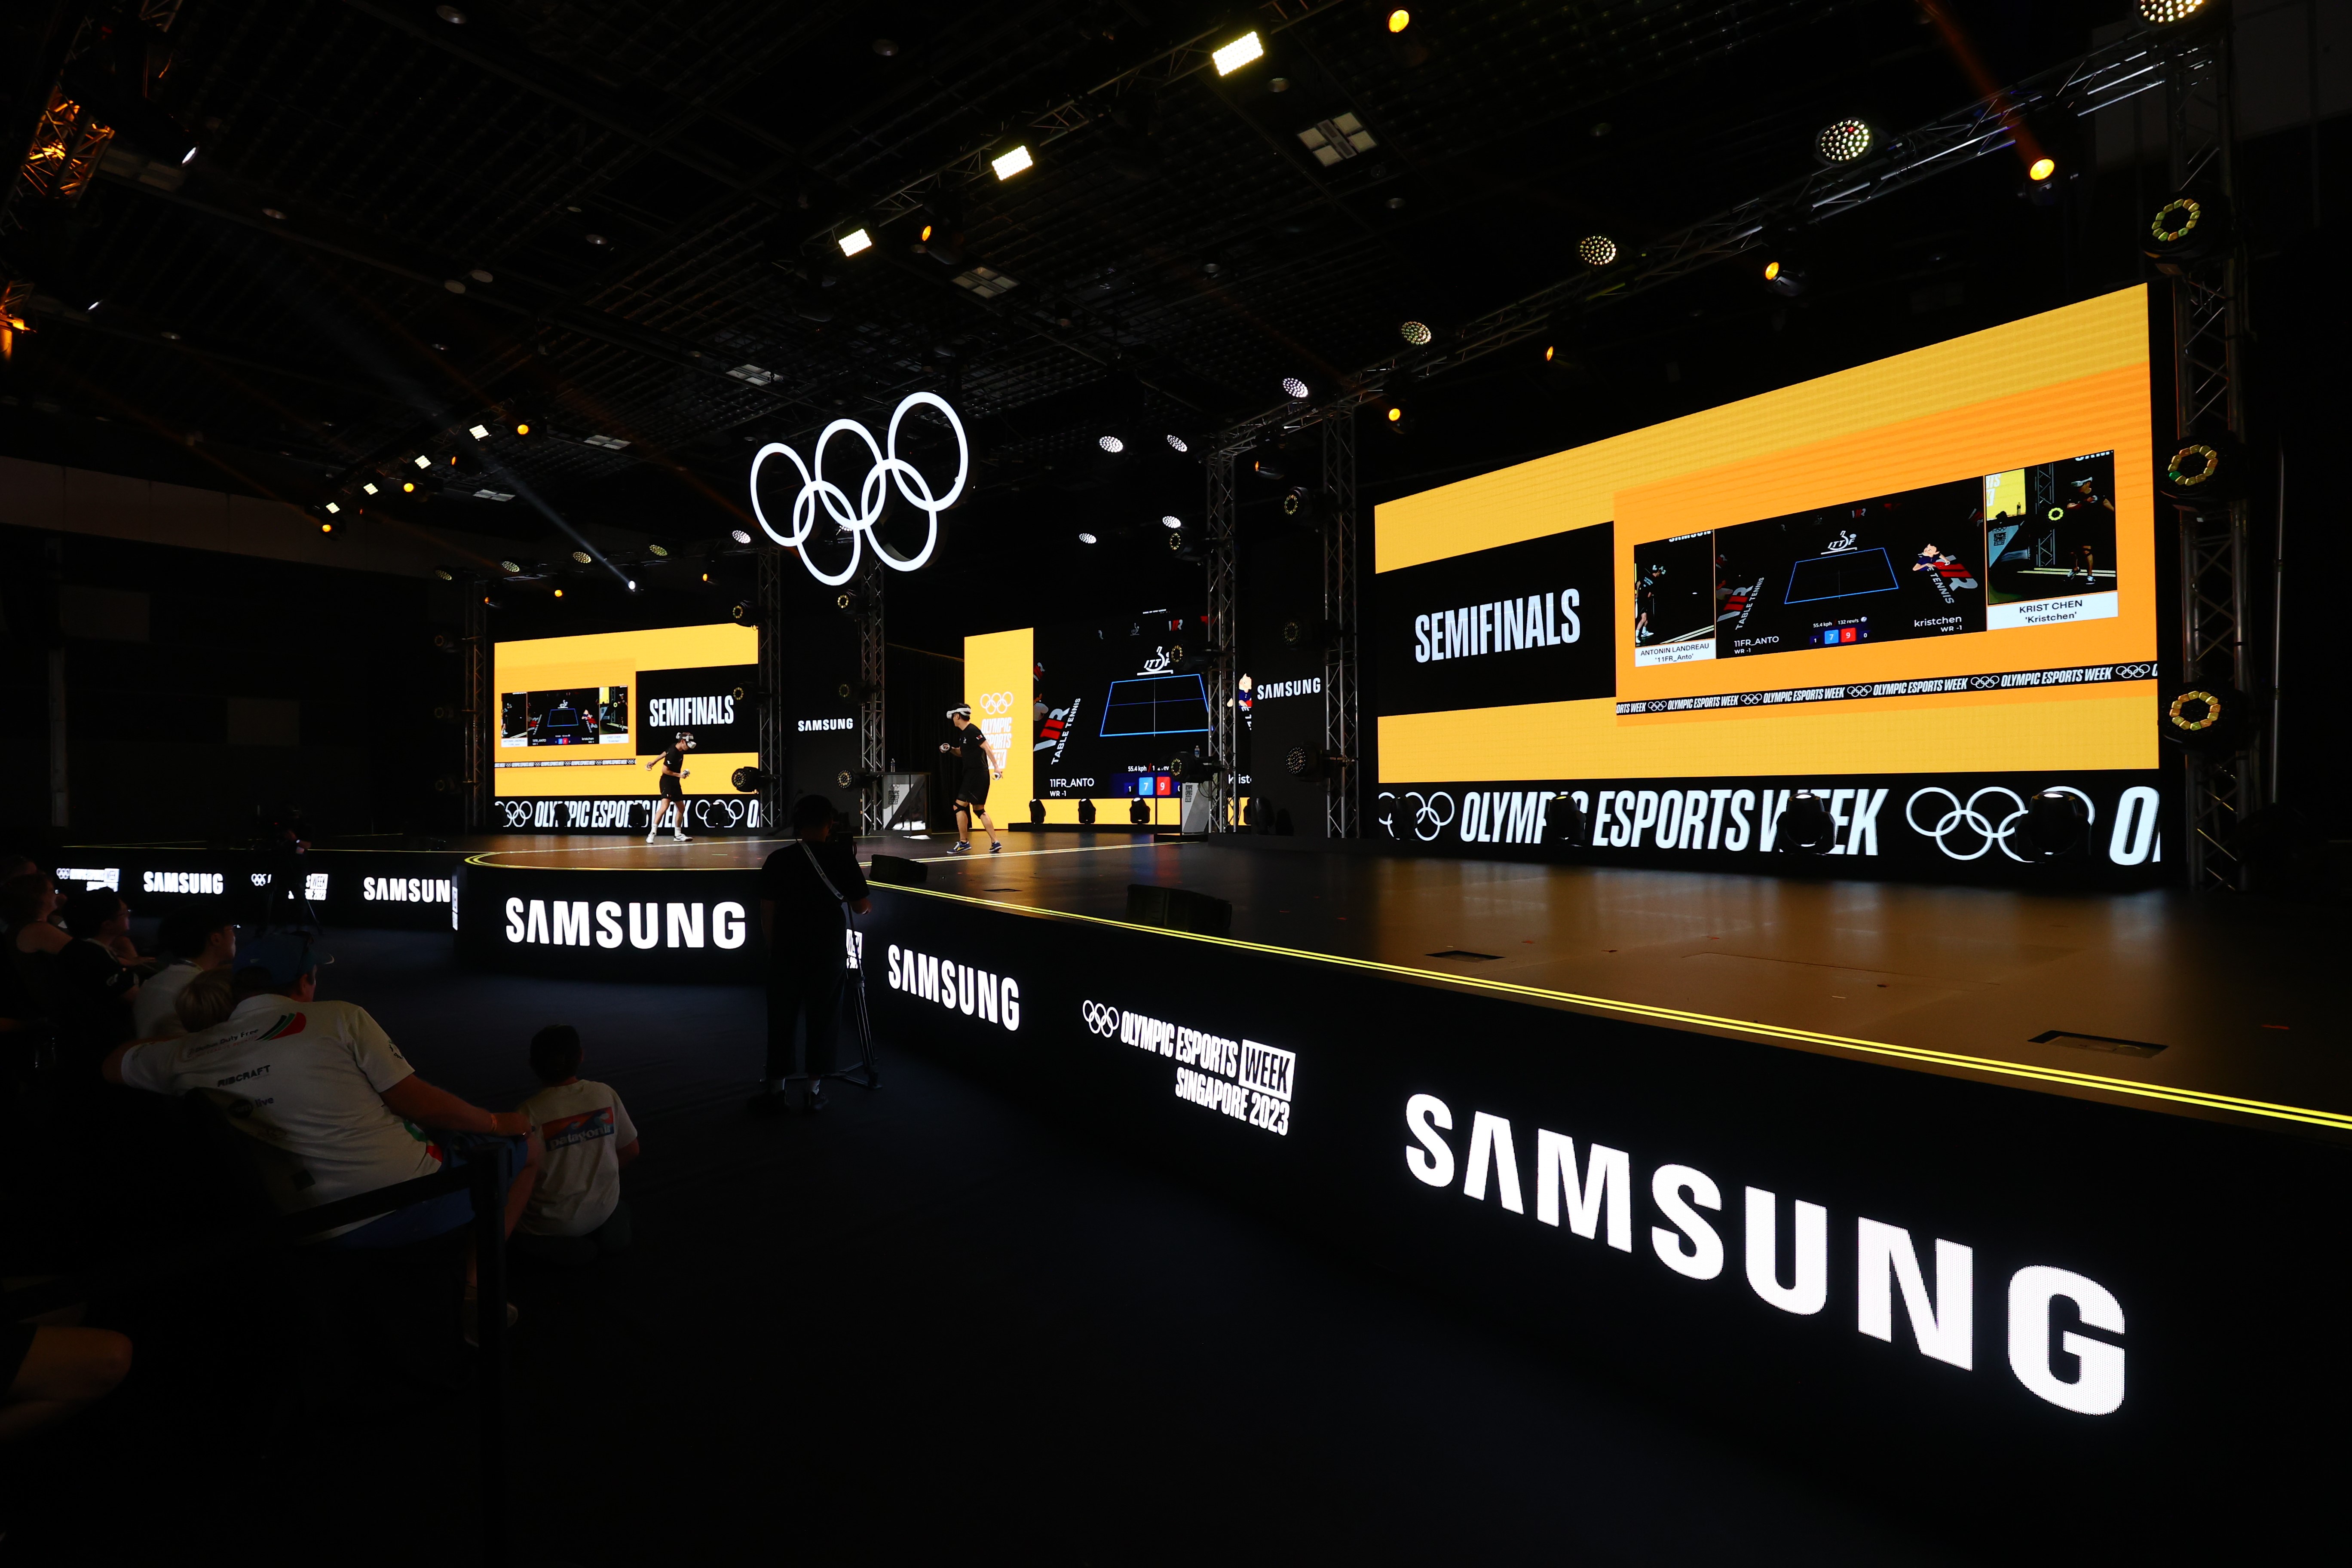 Samsung hợp tác với IOC để giới thiệu Tuần lễ Thể thao điện tử Olympic lần thứ nhất tại Singapore